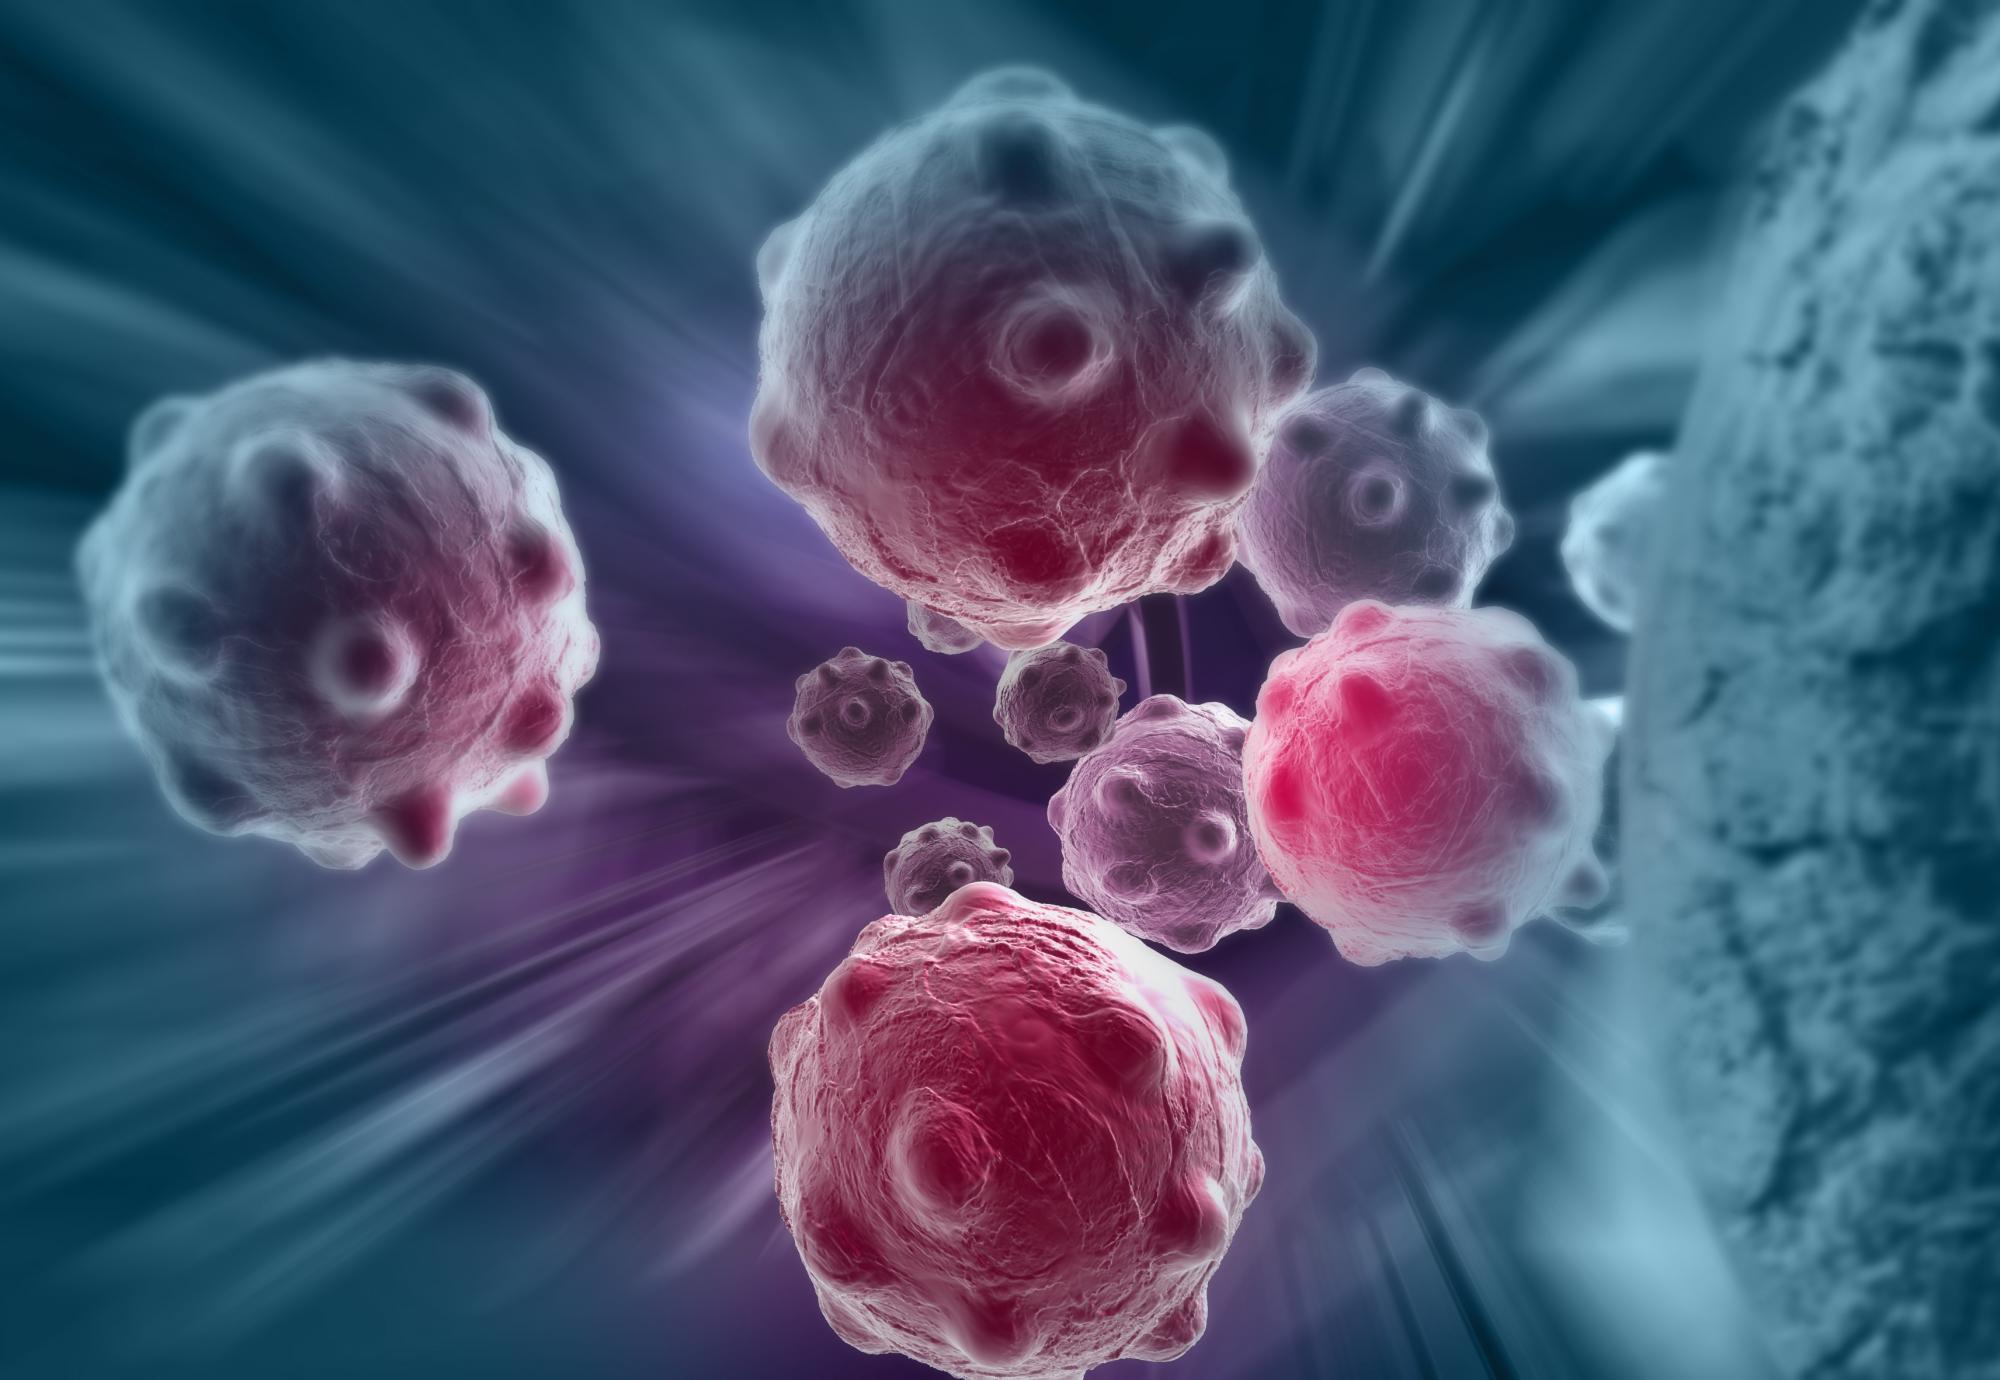 Artist impression of cancer cells